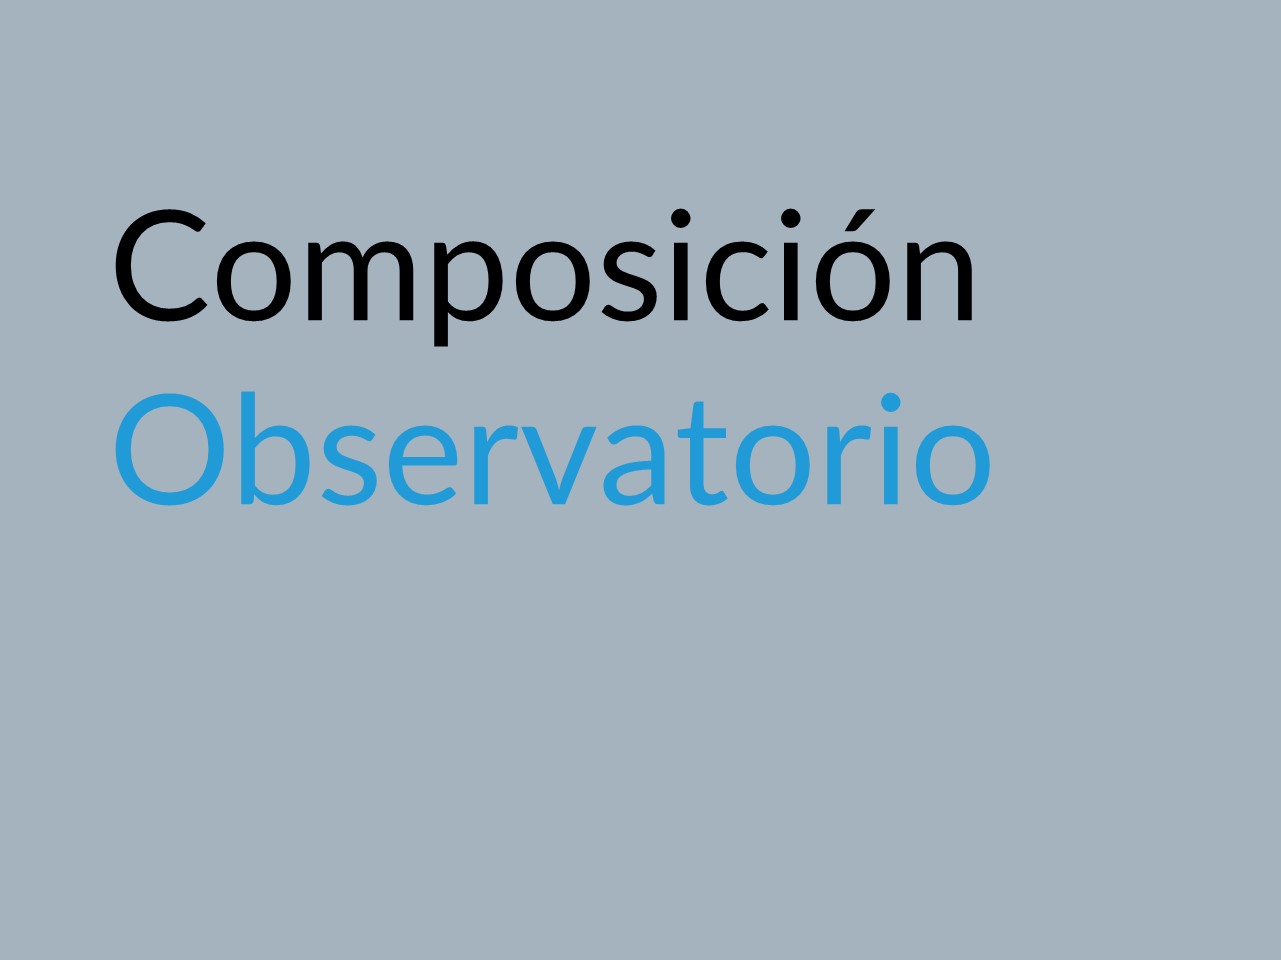 Composición del observatorio - Enlace a la página interna